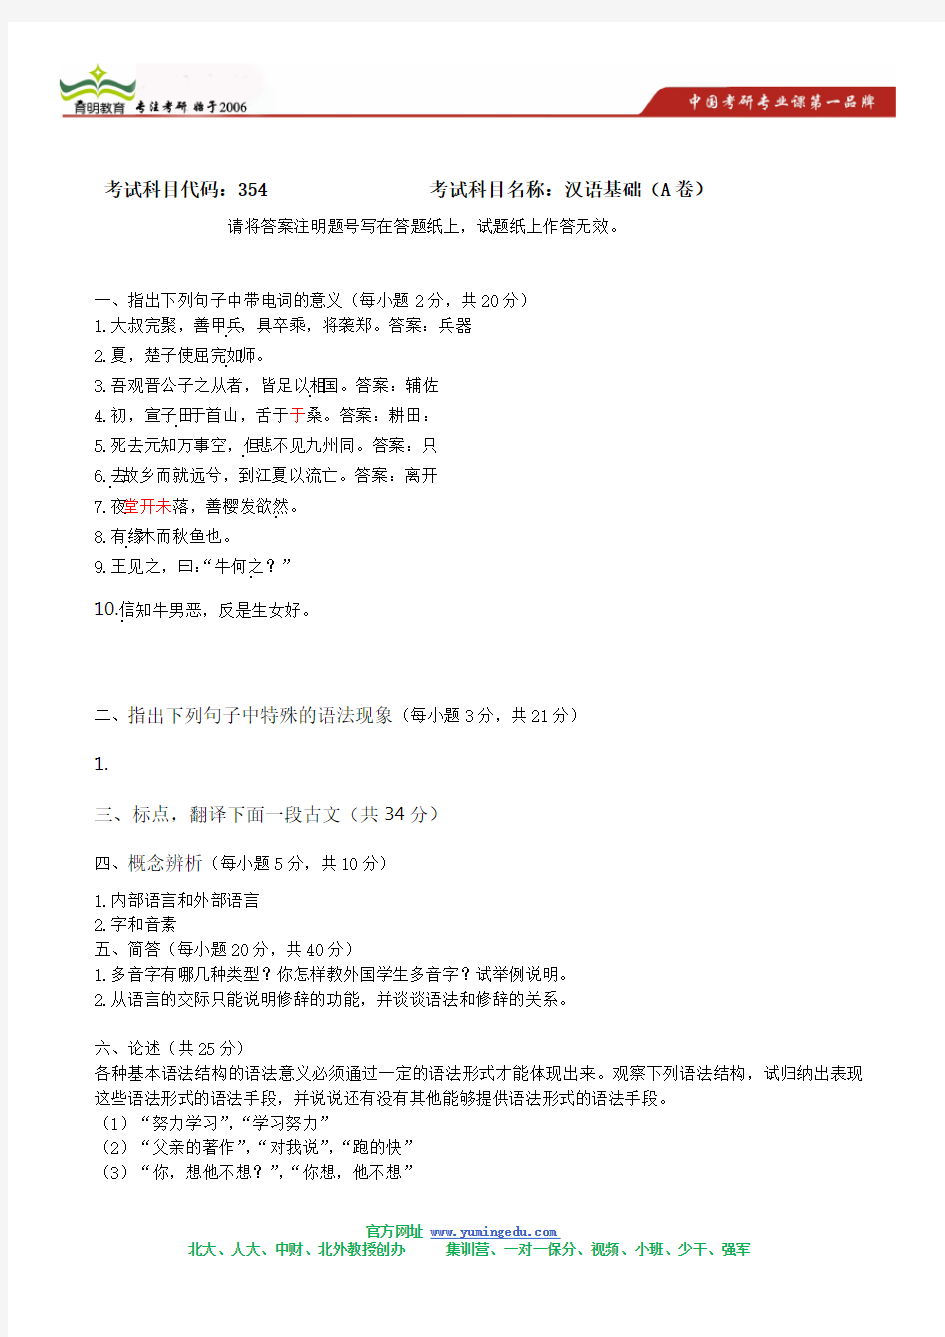 2011年武汉大学汉语基础考研真题及其答案解析攻